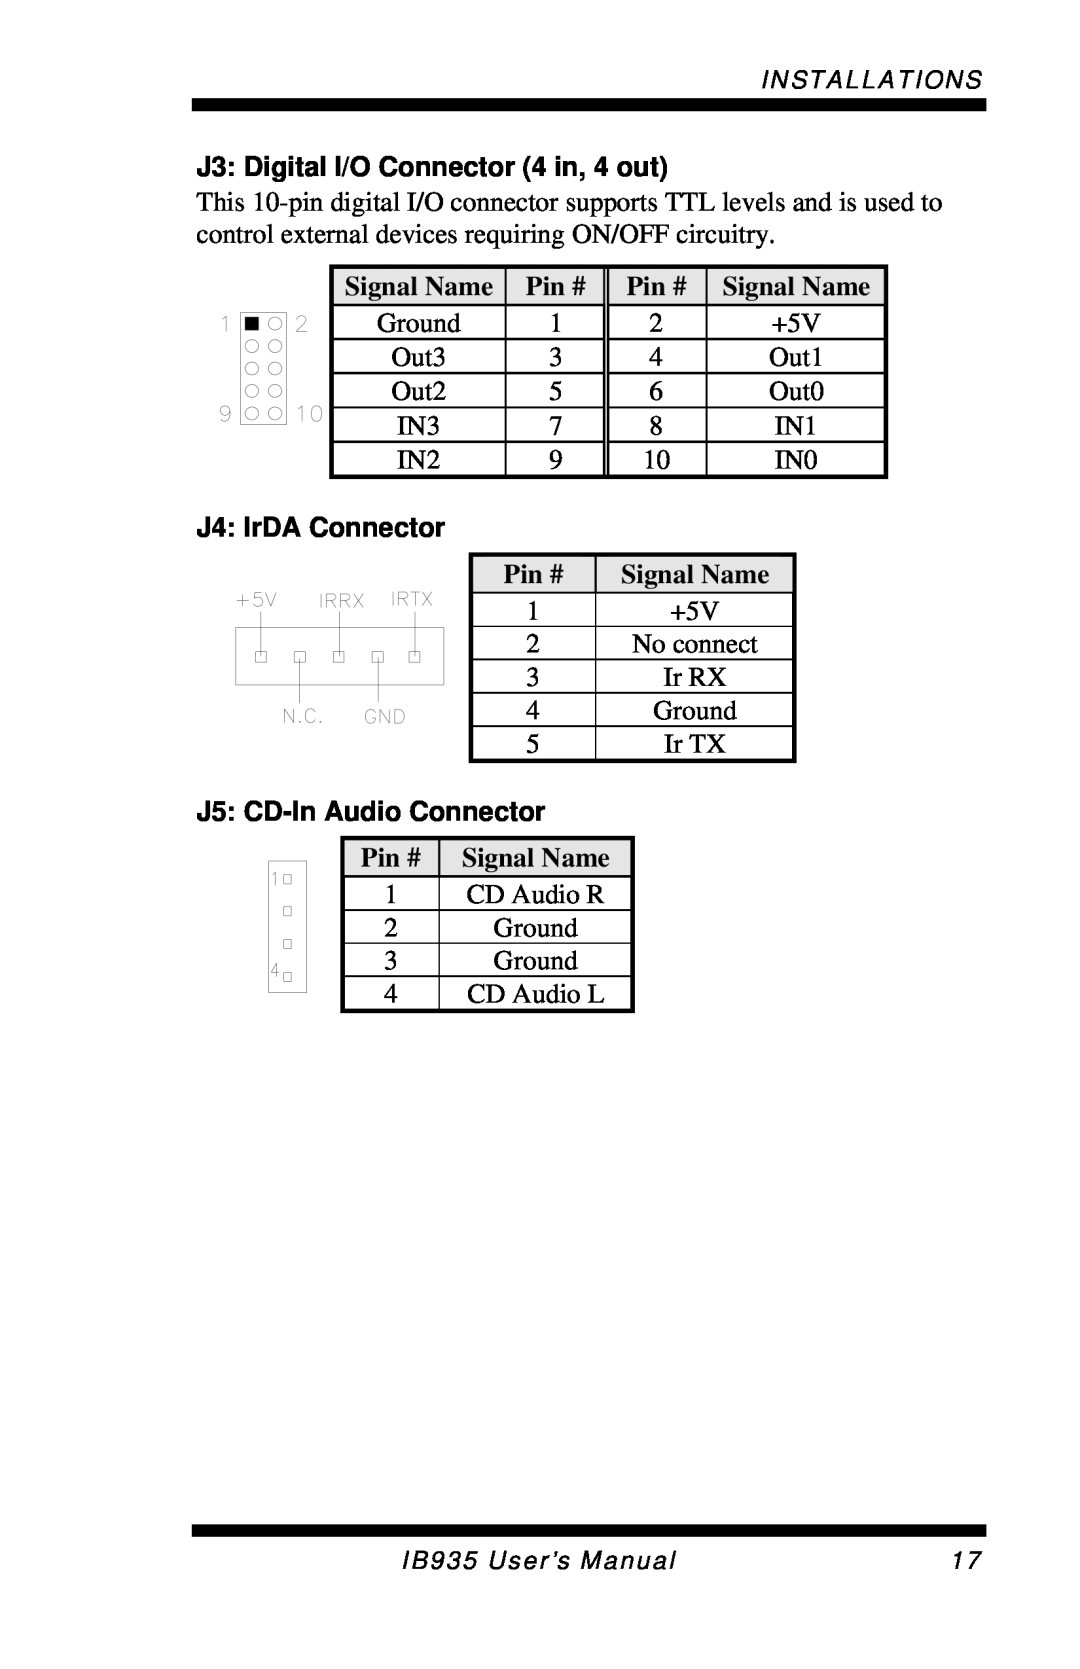 Intel IB935 J3 Digital I/O Connector 4 in, 4 out, J4 IrDA Connector, J5 CD-In Audio Connector, Signal Name, Pin # 